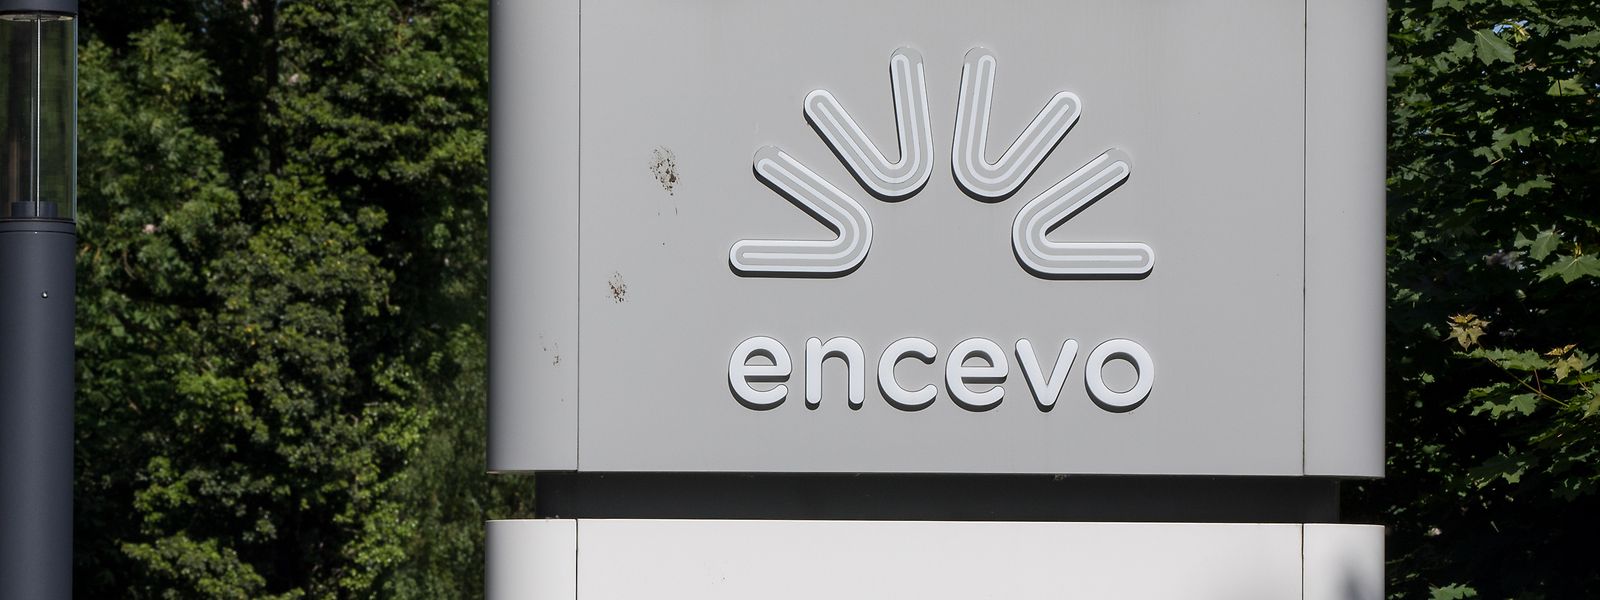 Encevo-Gruppe weist erneut solides Geschäftsergebnis auf.